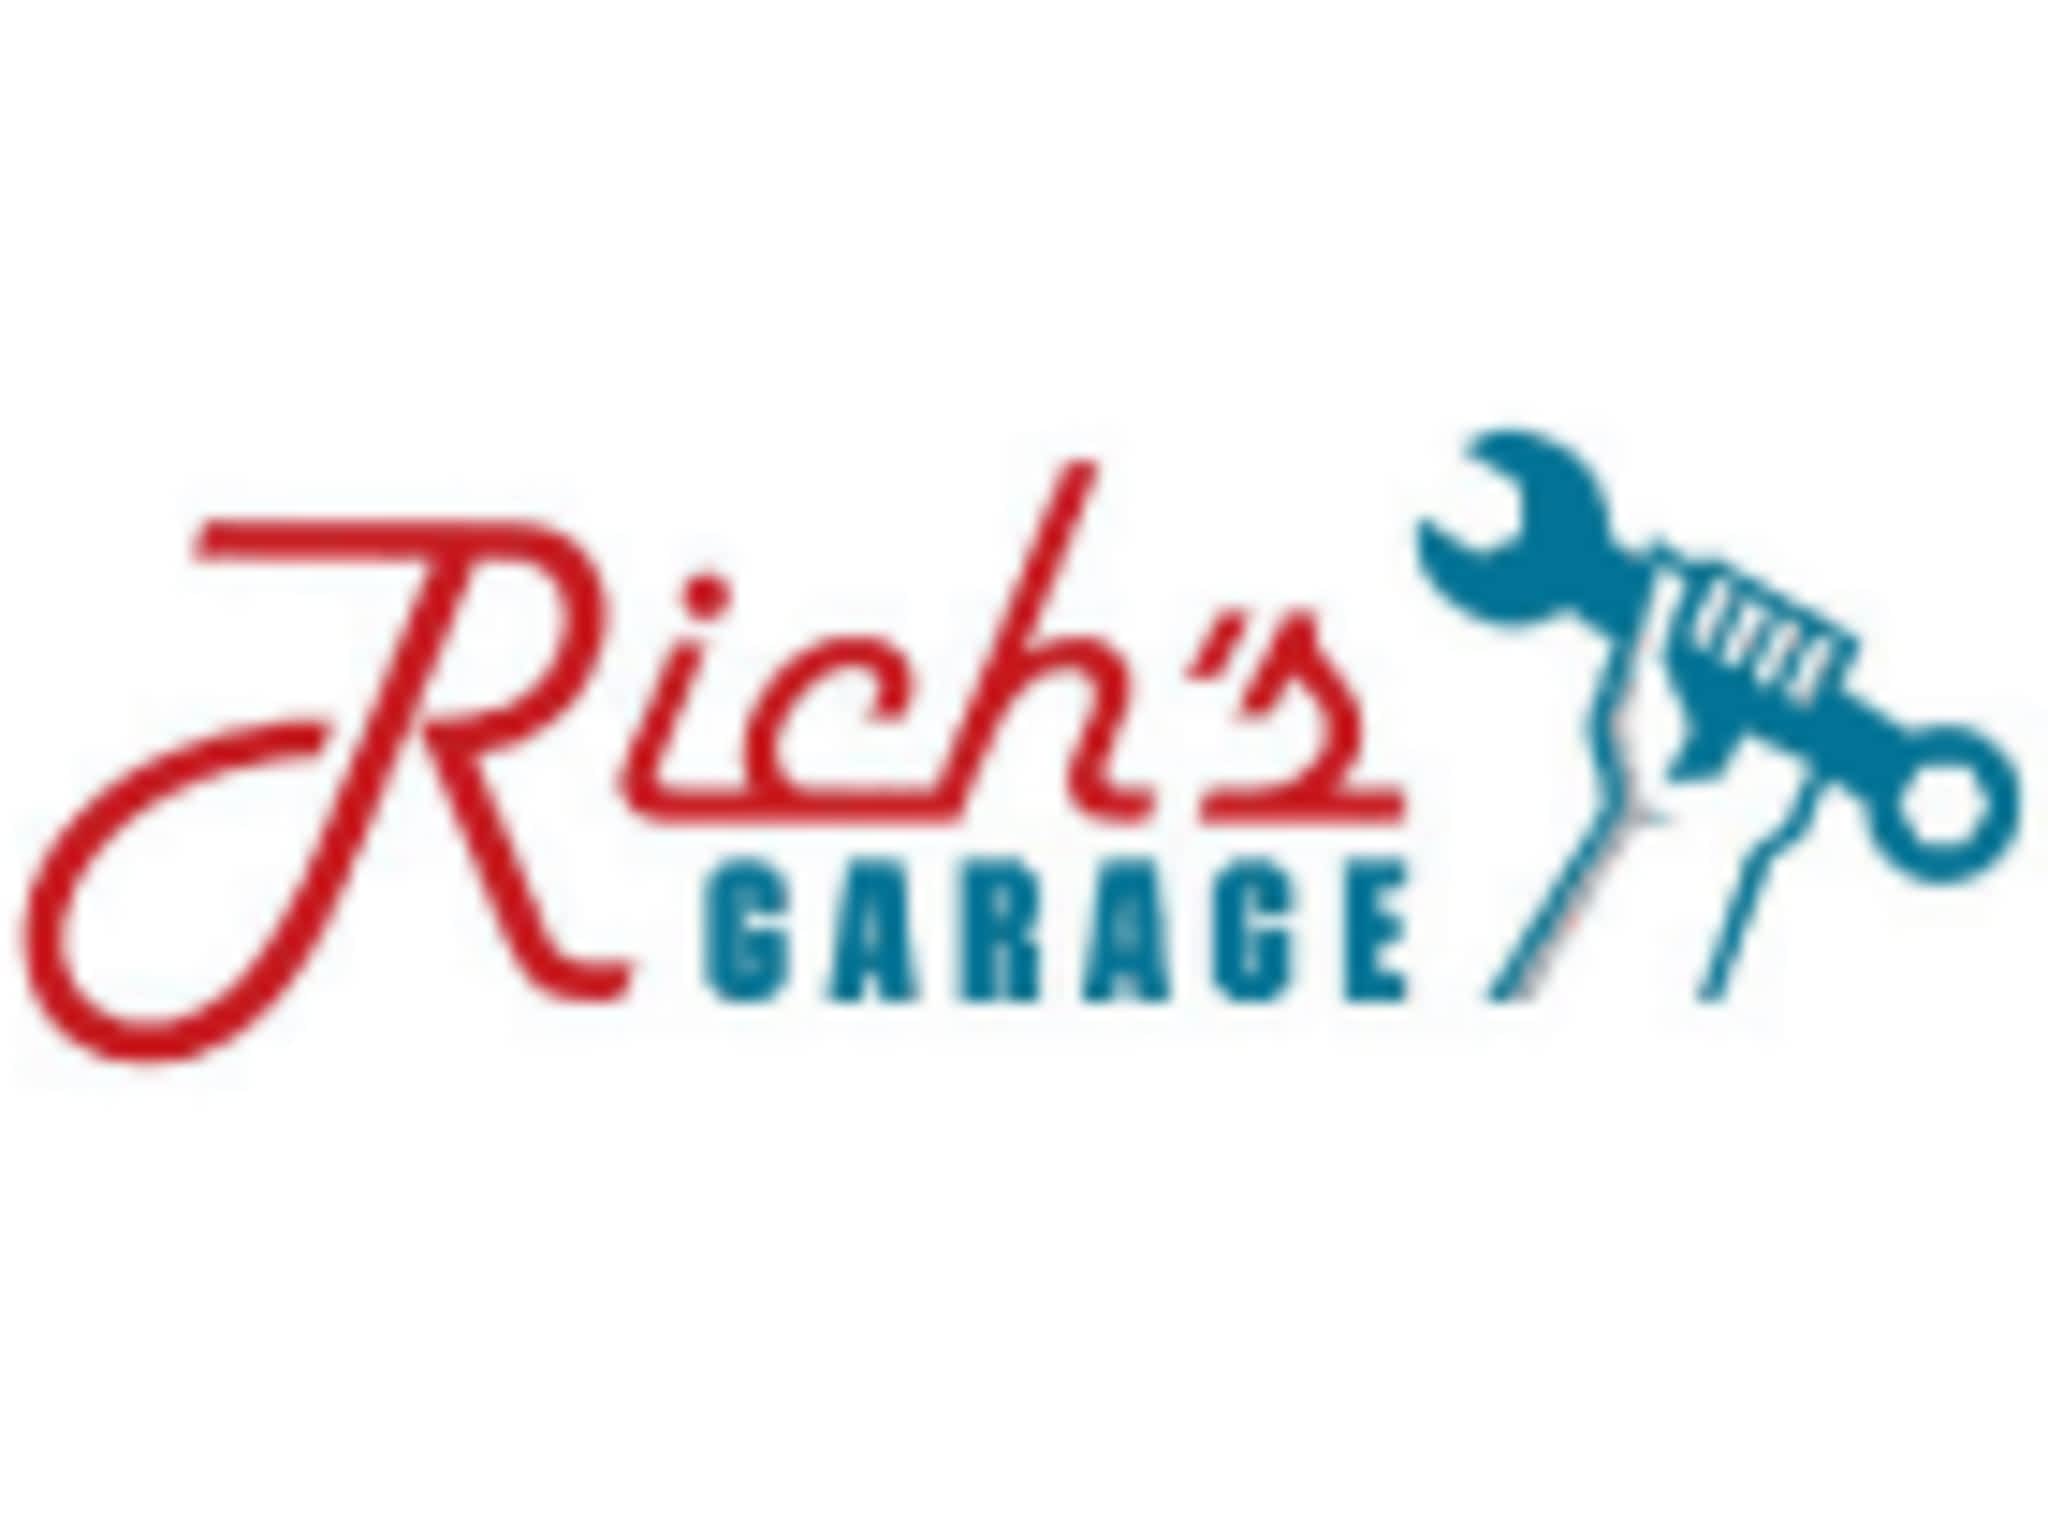 photo Rich's Garage Ltd